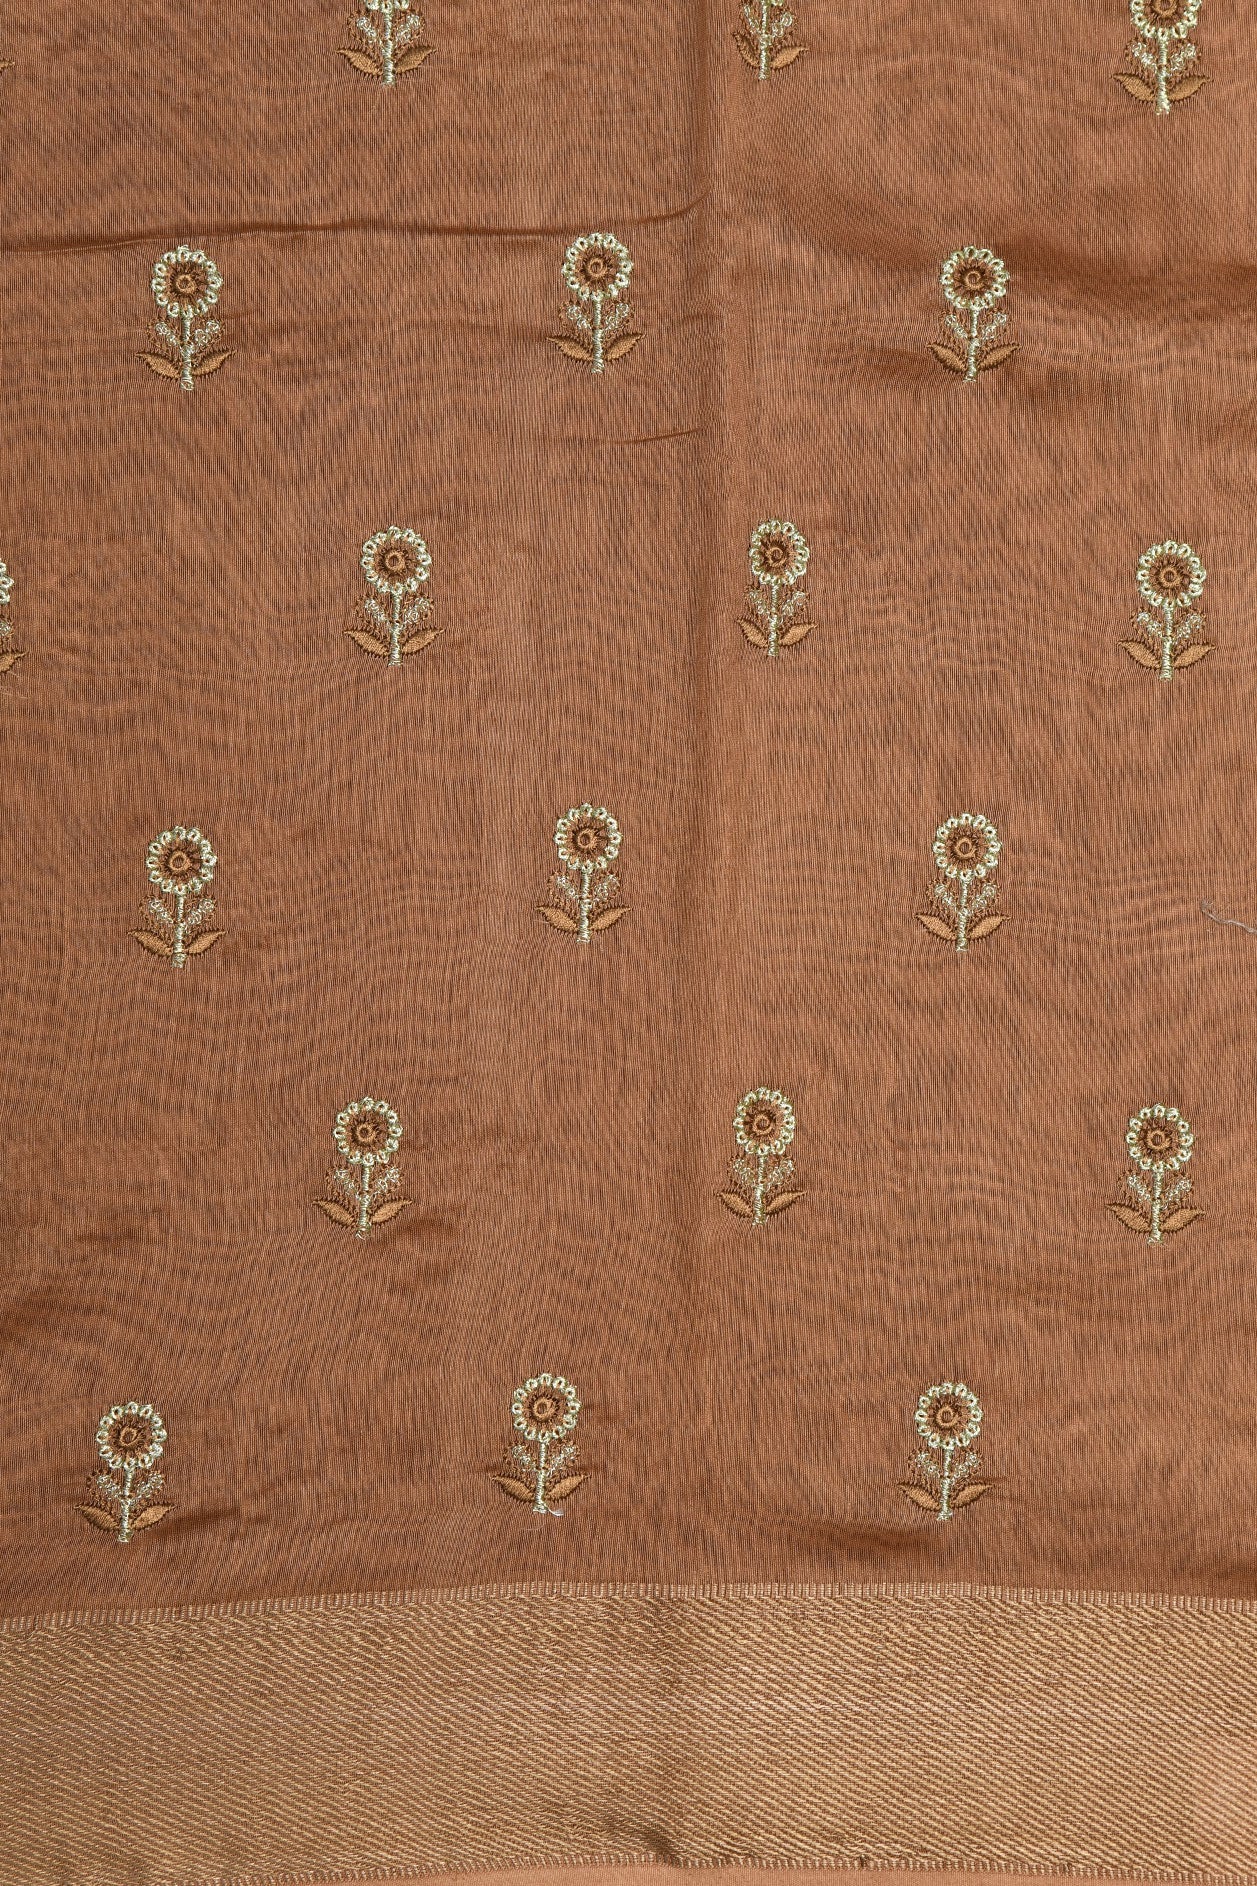 Embroidered Floral Design Chocolate Brown Chanderi Silk Cotton Saree